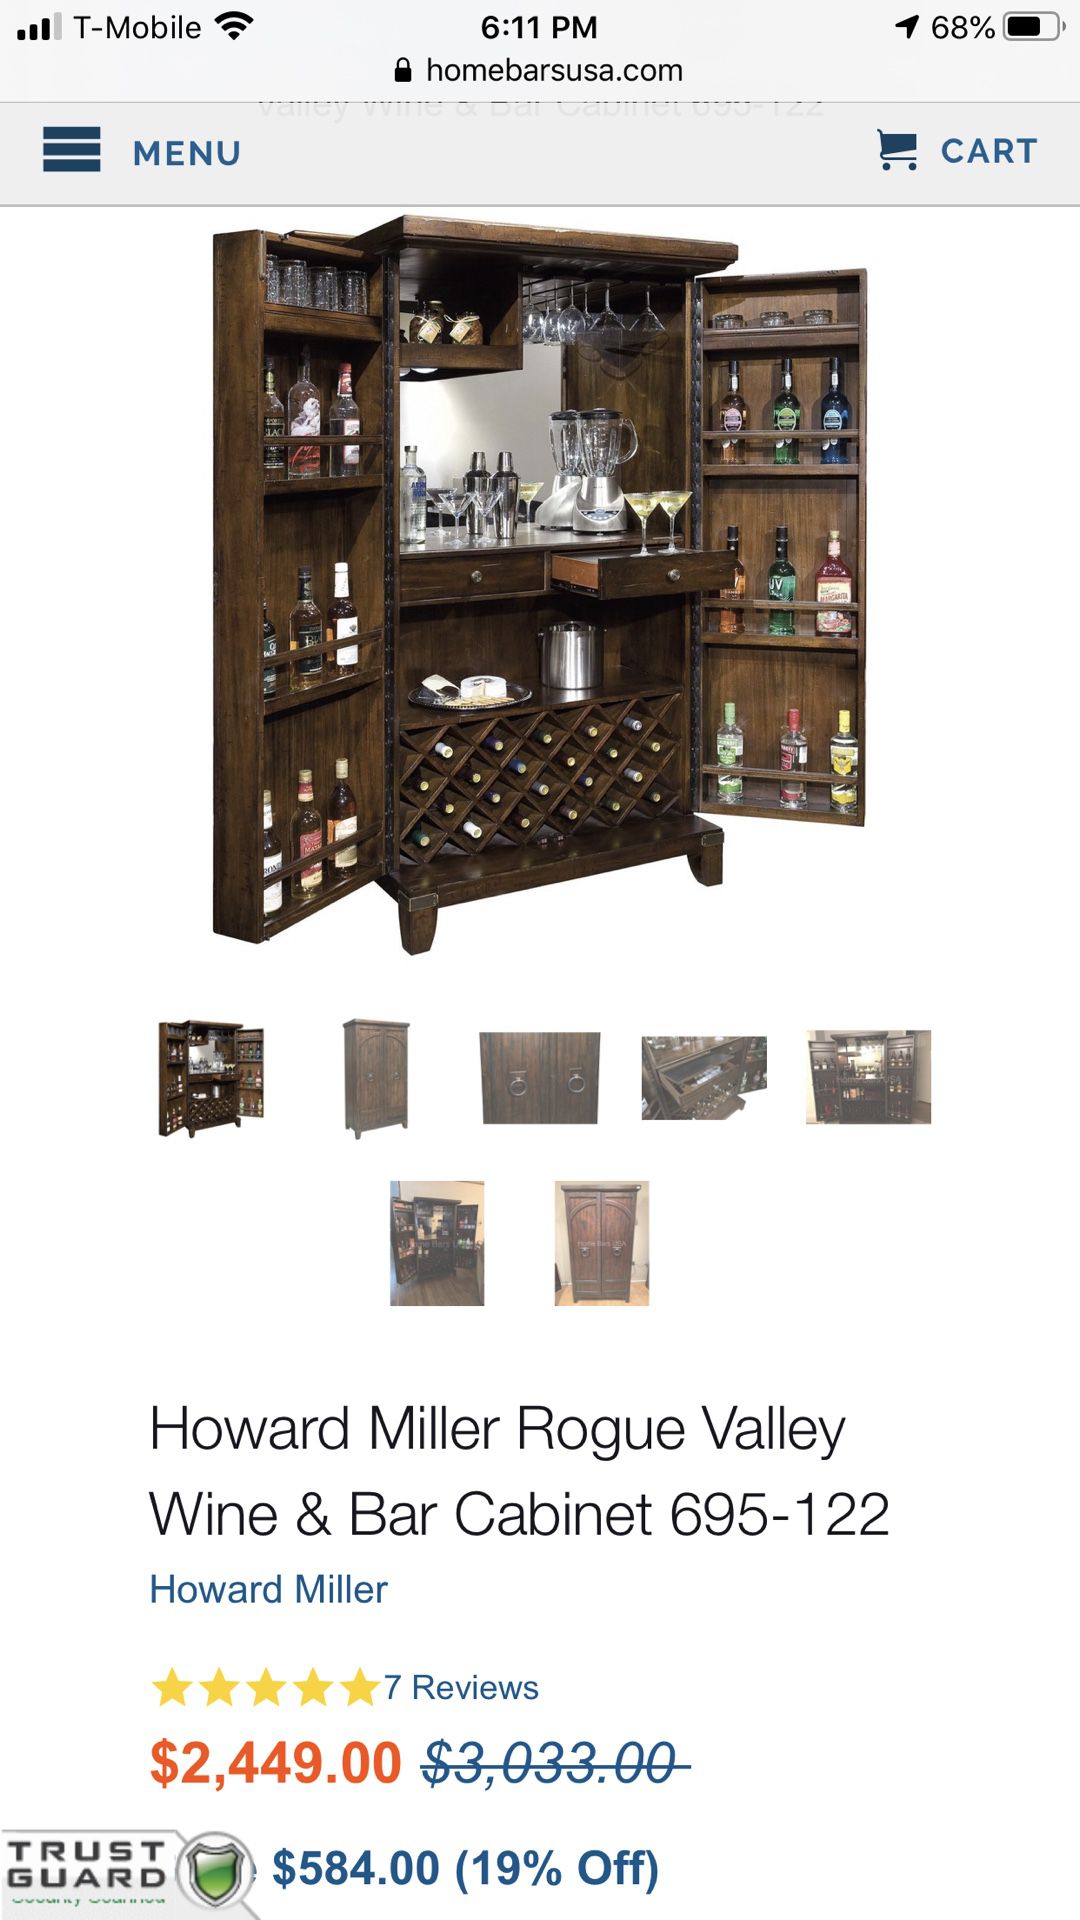 Brand New Howard Miller Wine & Liquor Cabinet